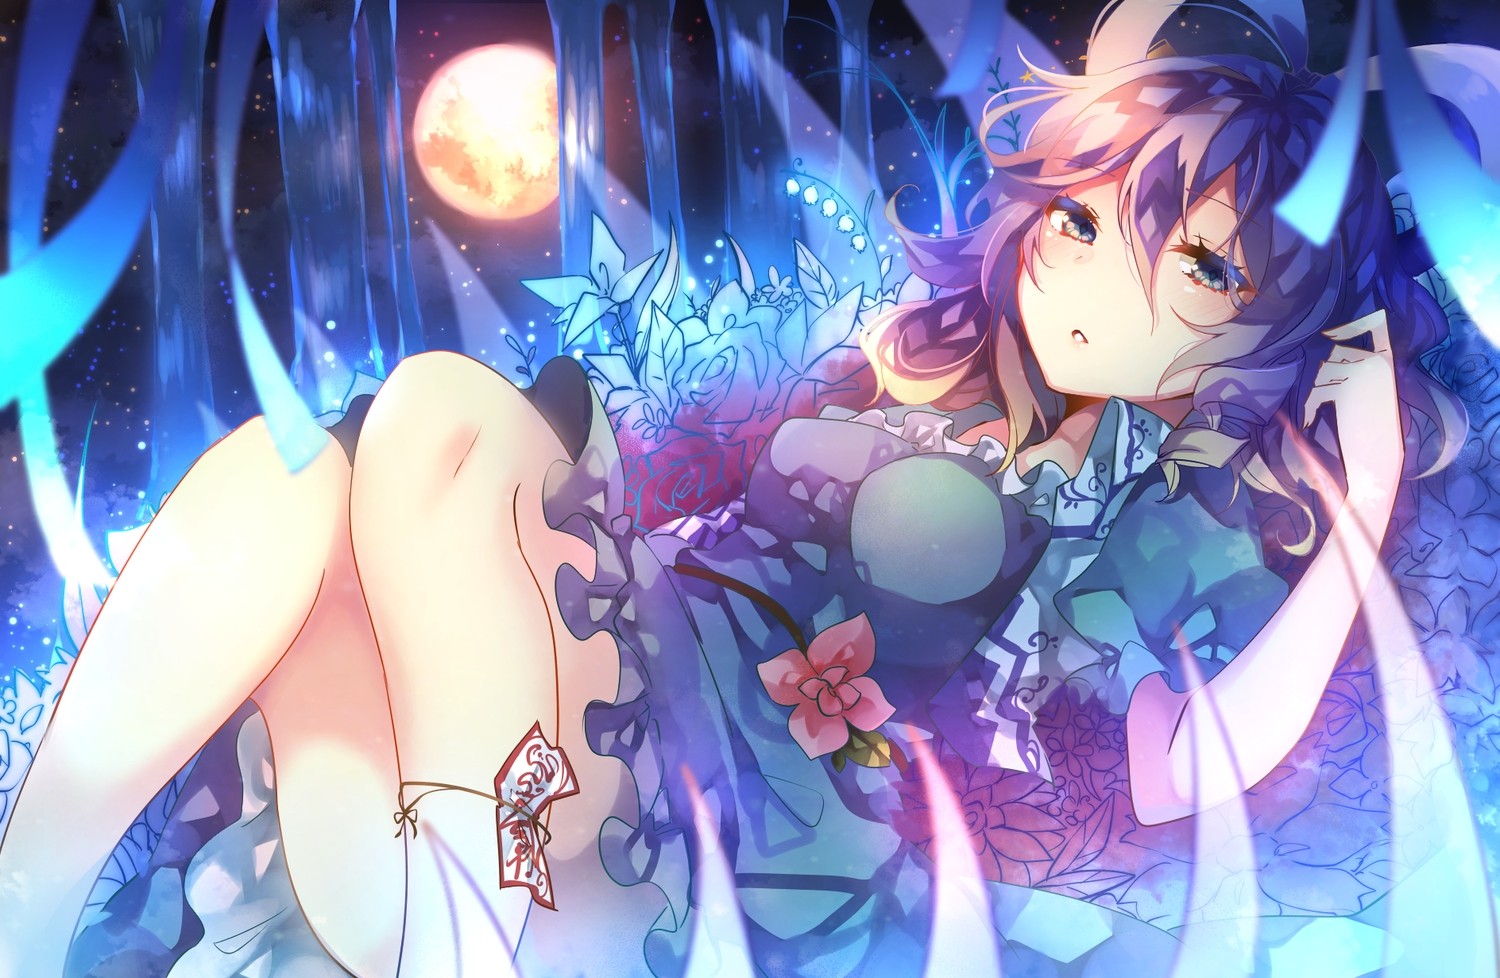 Anime 1500x978 Touhou Kaku Seiga purple hair anime girls Moon anime fantasy art fantasy girl